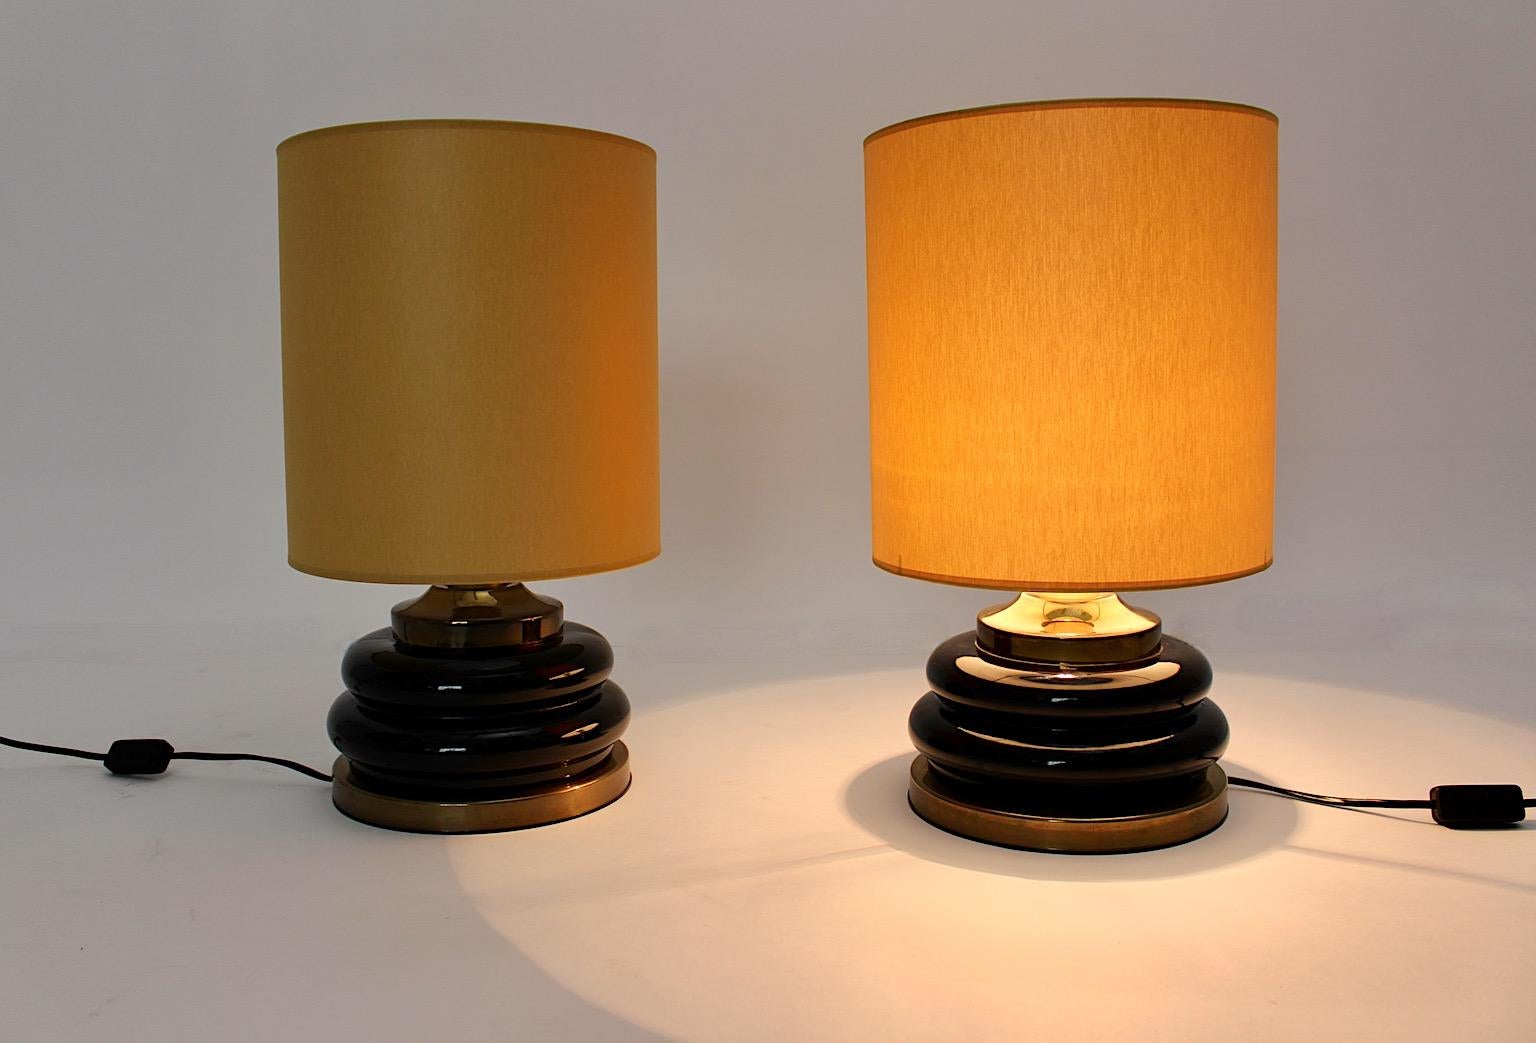 Paire de lampes de table vintage moderniste en verre brun et or, conçue et fabriquée en Italie dans les années 1970.
Une étonnante paire de lampes de table avec des bords arrondis au niveau de la base en verre et des détails en laiton et en